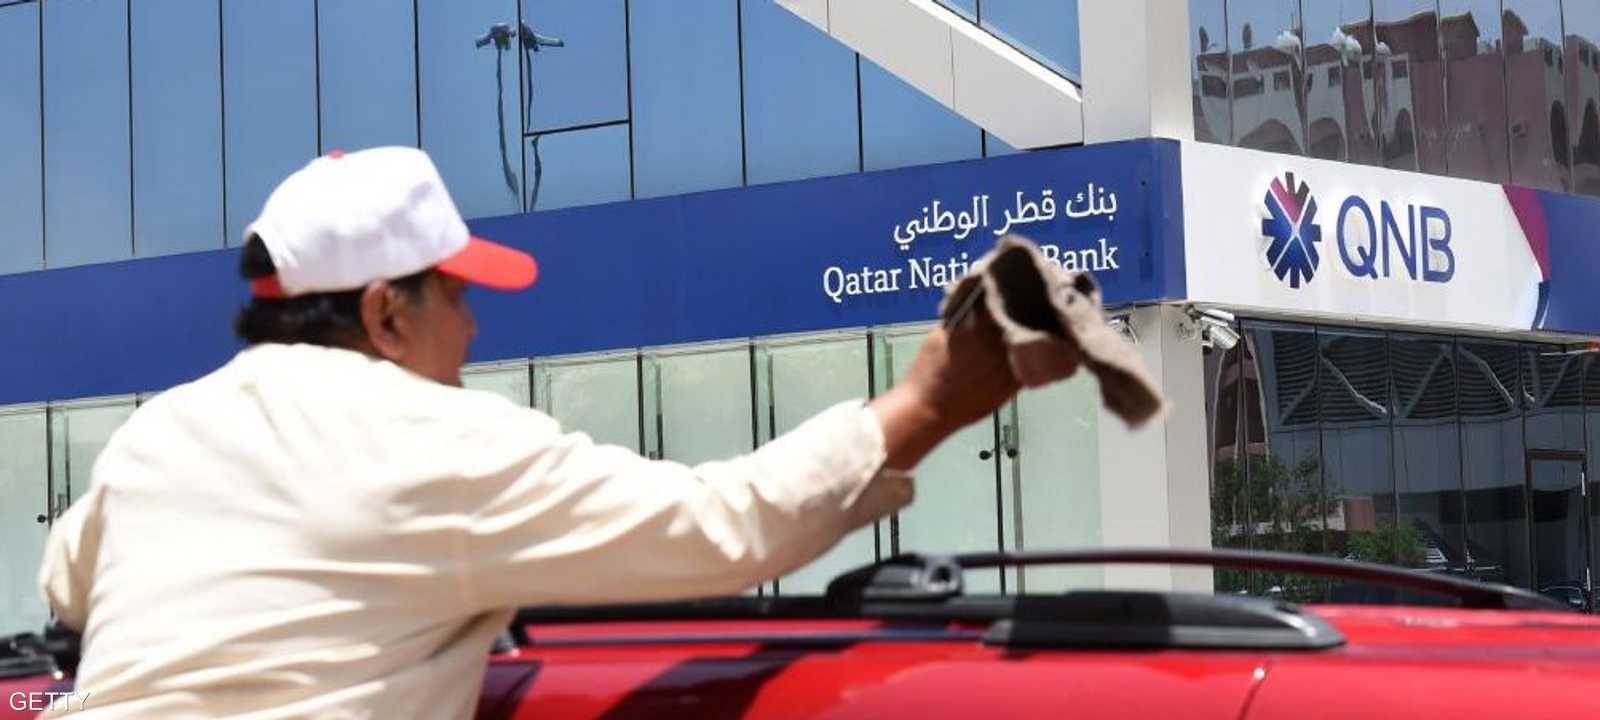 بنوك في قطر